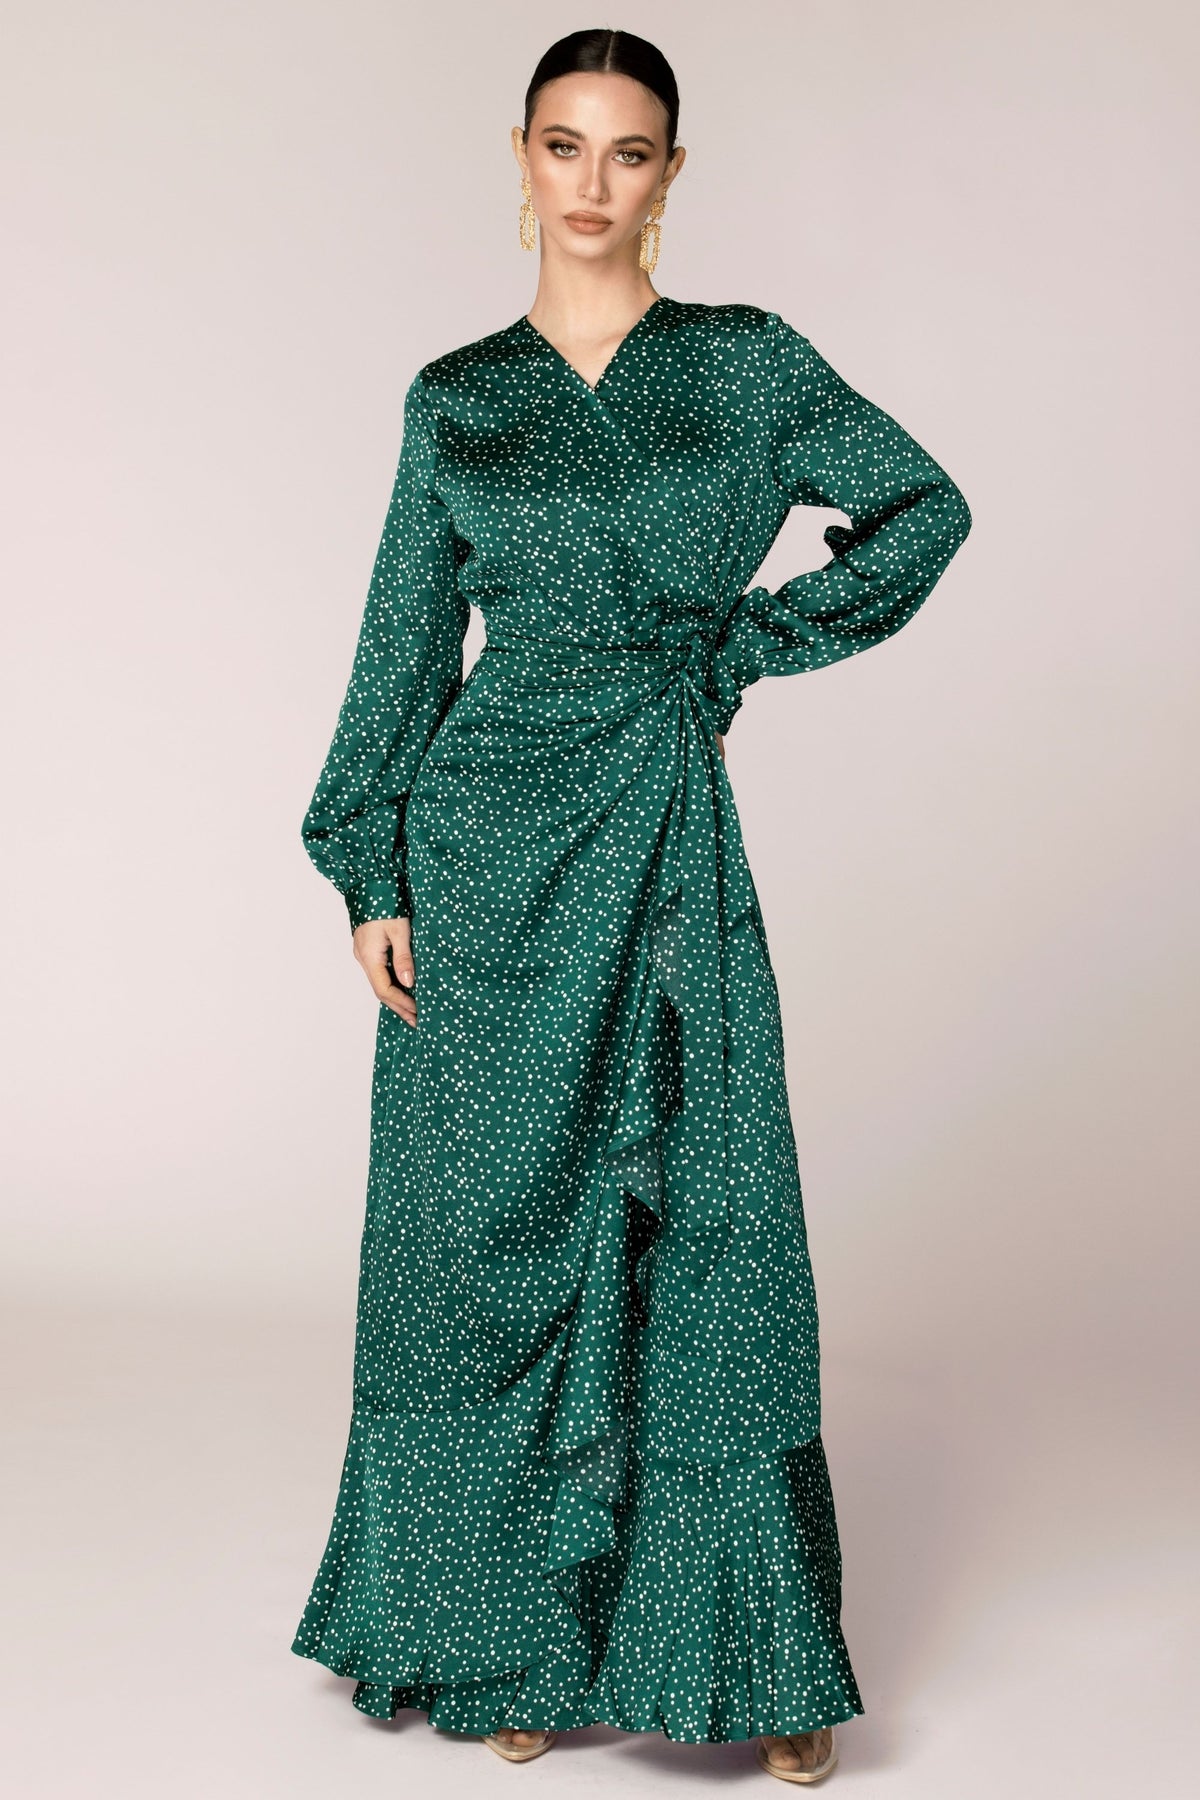 Emerald Polka Dot Satin Wrap Maxi Dress Dresses saigonodysseyhotel 